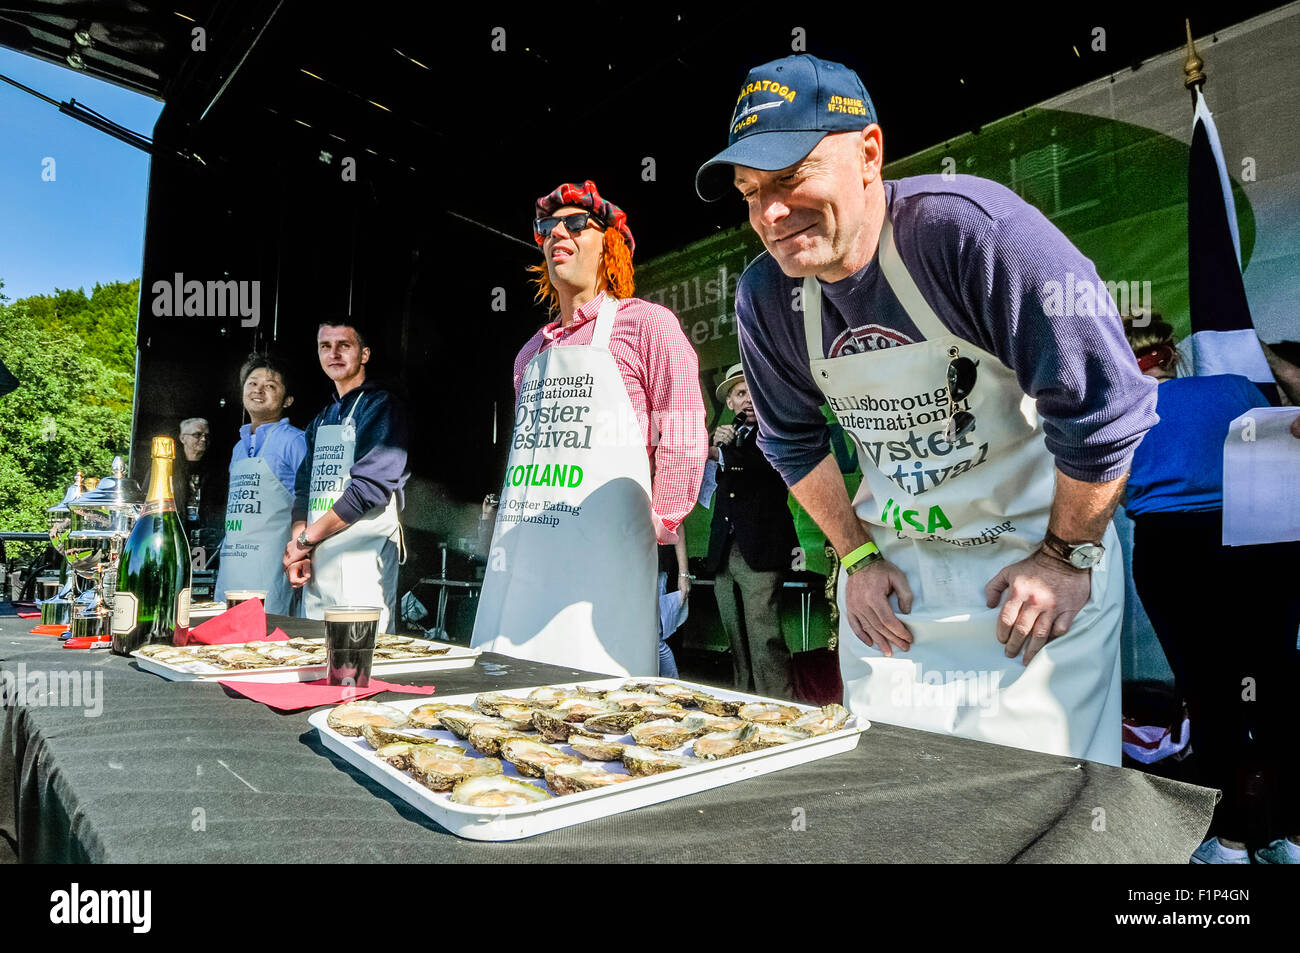 Hillsborough, Nordirland. 5 SEP 2015 - Amateure versuchen in einer Minute am Hillsborough International Oyster Festival 30 Austern essen. Bildnachweis: Stephen Barnes/Alamy Live-Nachrichten Stockfoto